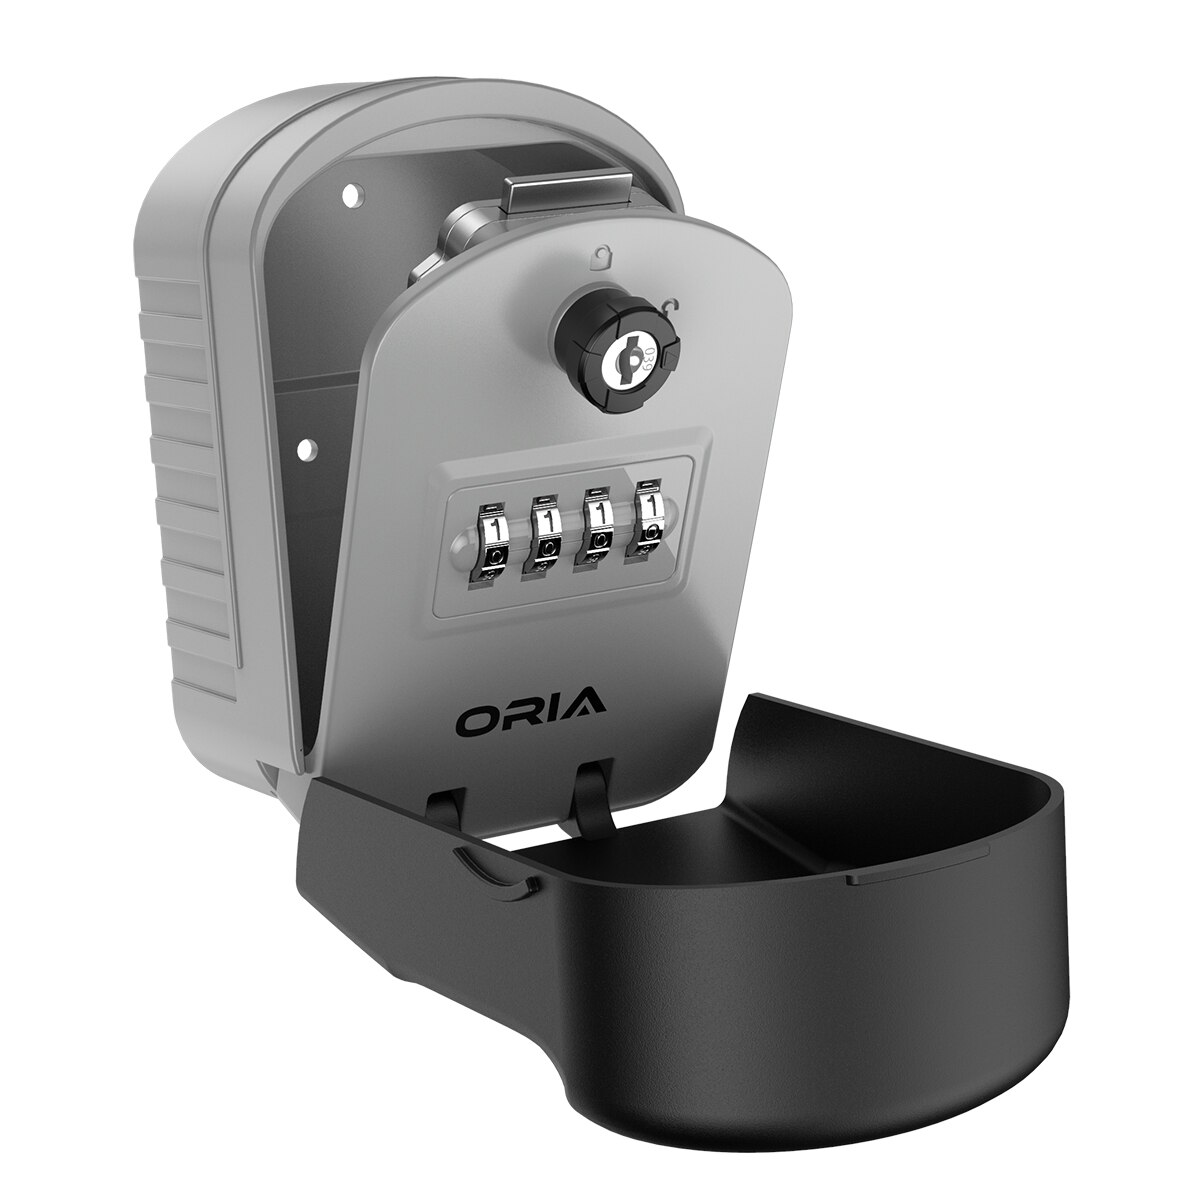 ORIA-caja de almacenamiento de llaves, candado de combinación de 4 dígitos, cerradura de bolsa de llaves, almacenamiento seguro montado en la pared, caja resistente a la intemperie para el hogar y al aire libre